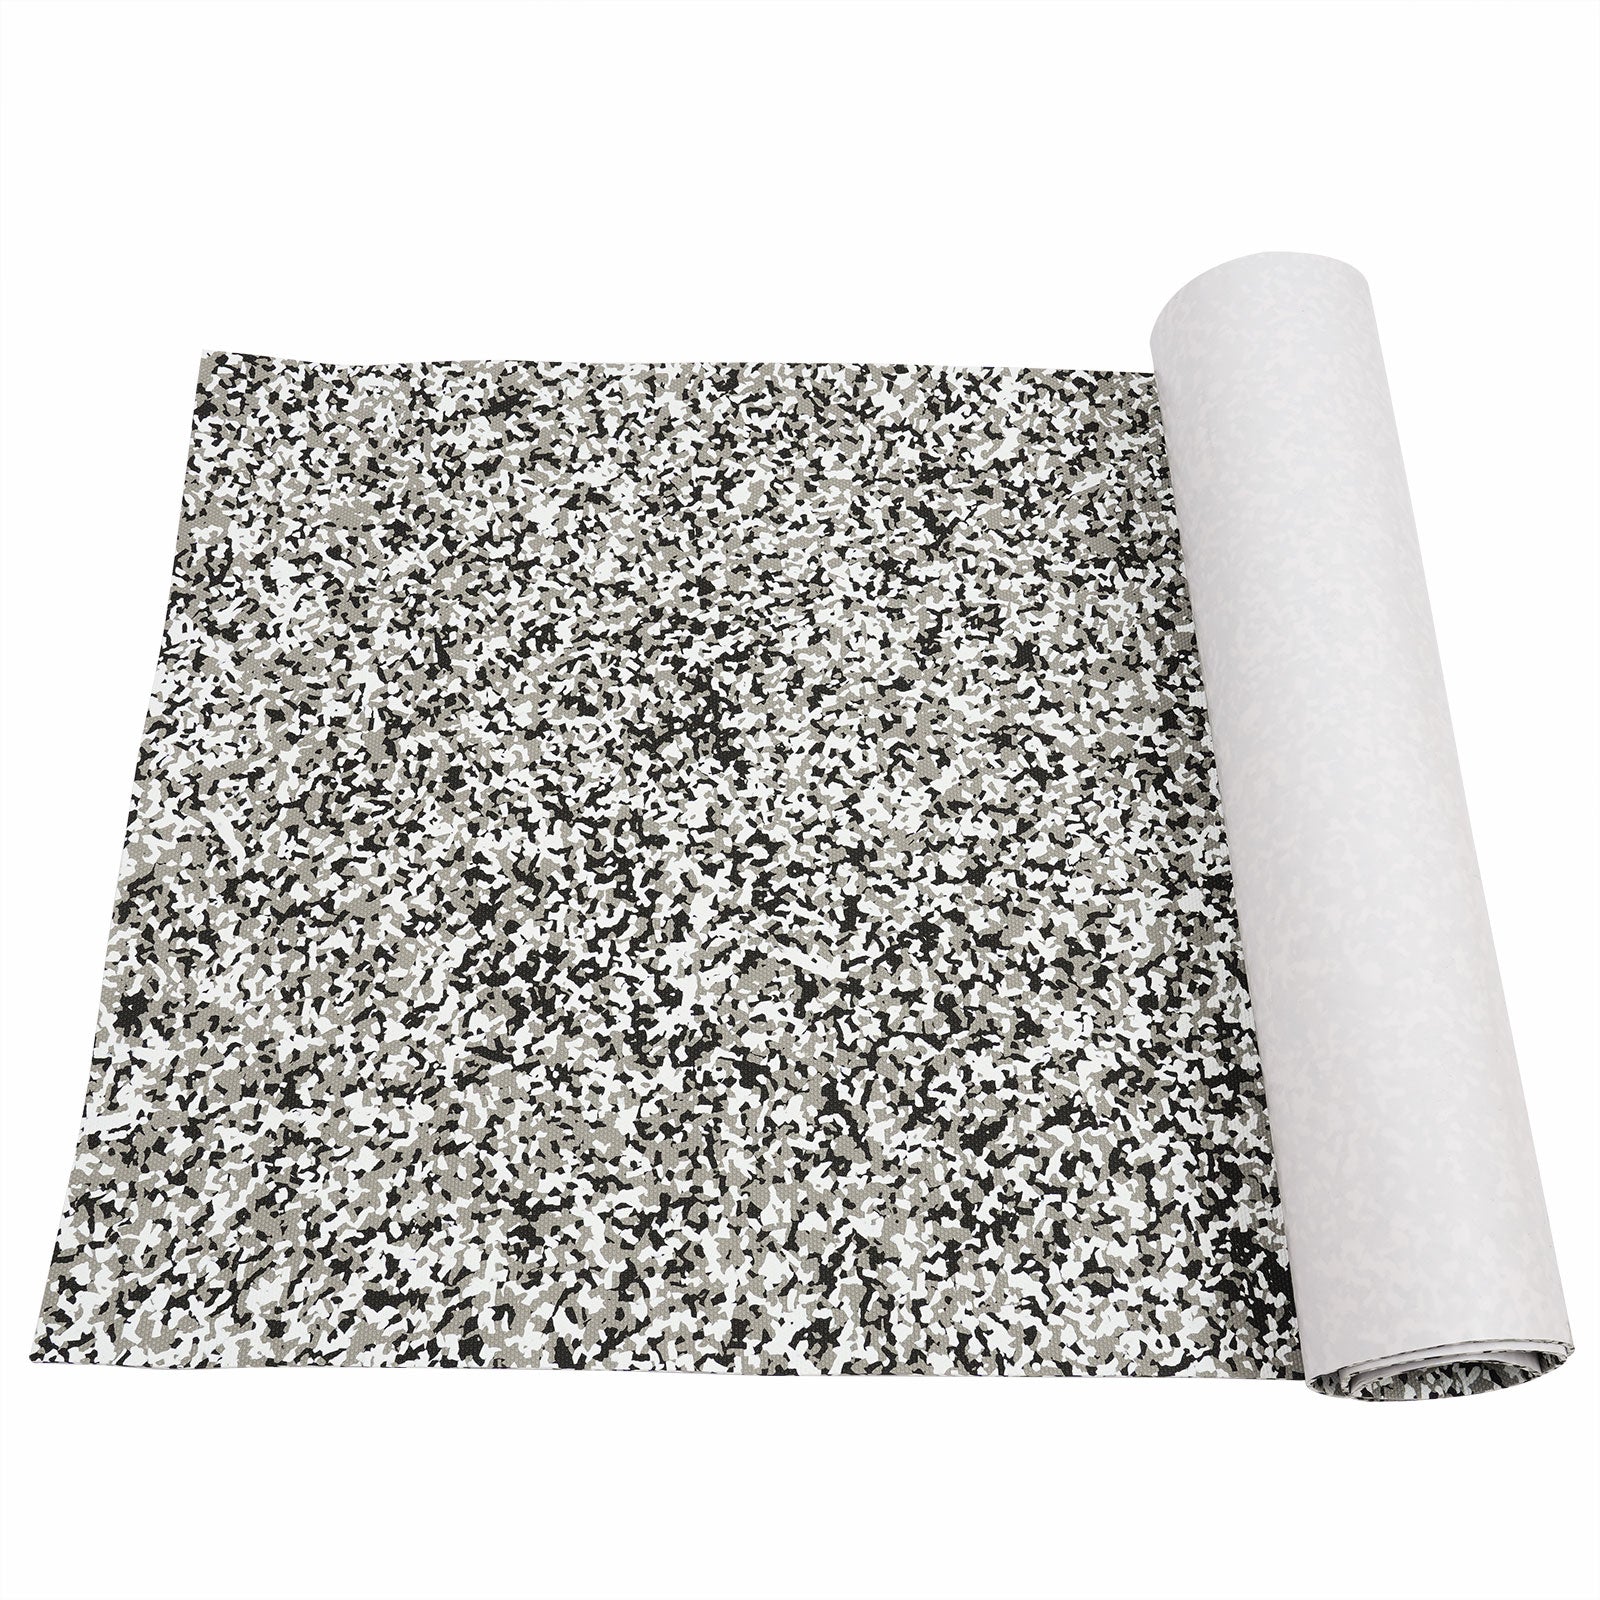 240 x 90 x 0.6cm tappeto antiscivolo in schiuma Eva